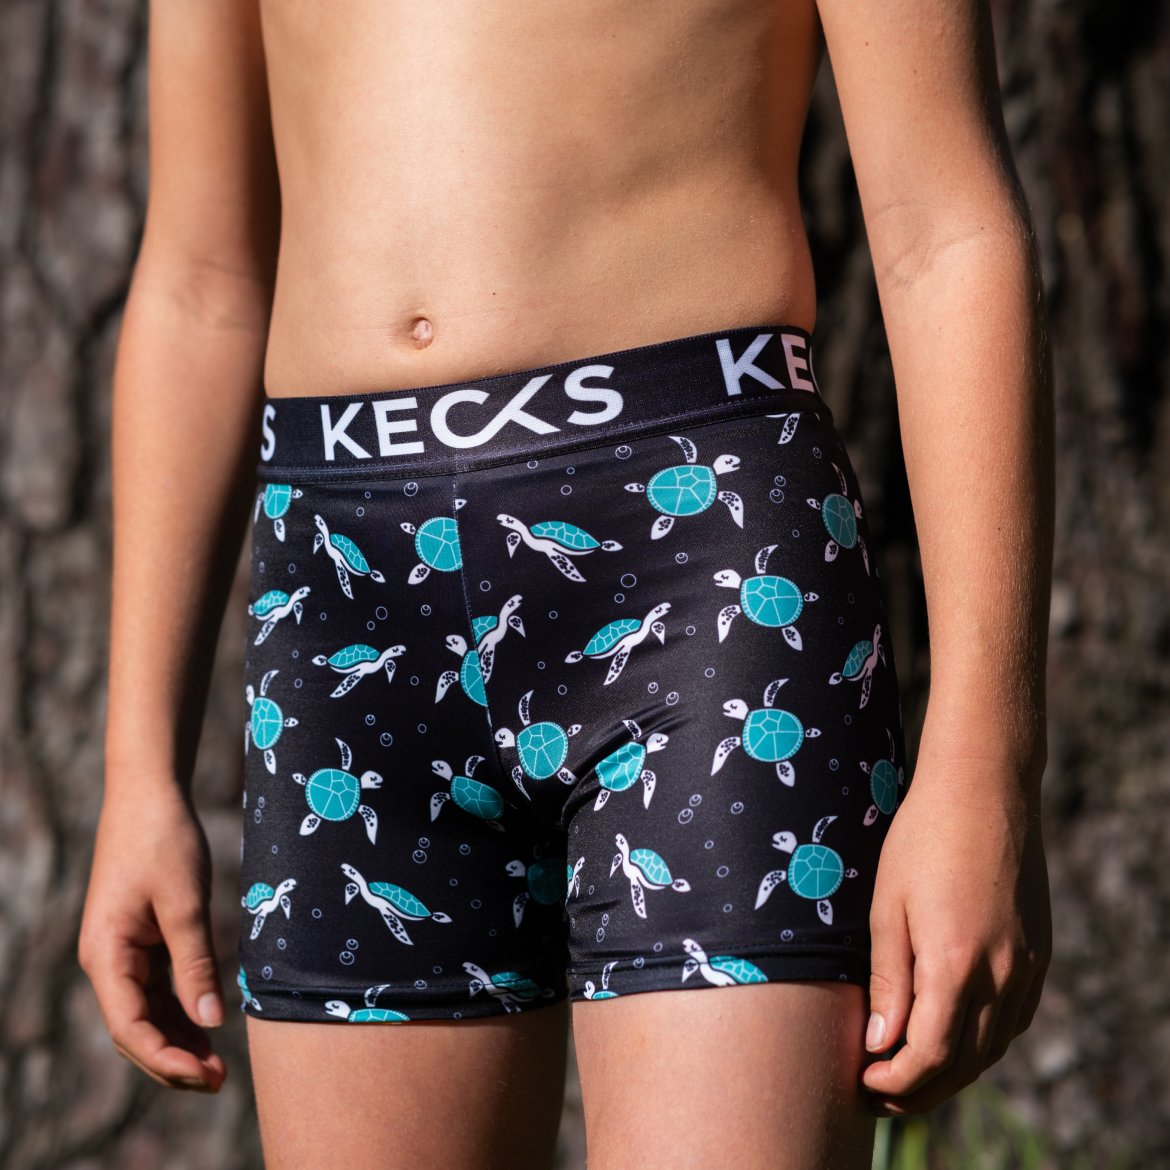 Kids – Kecks